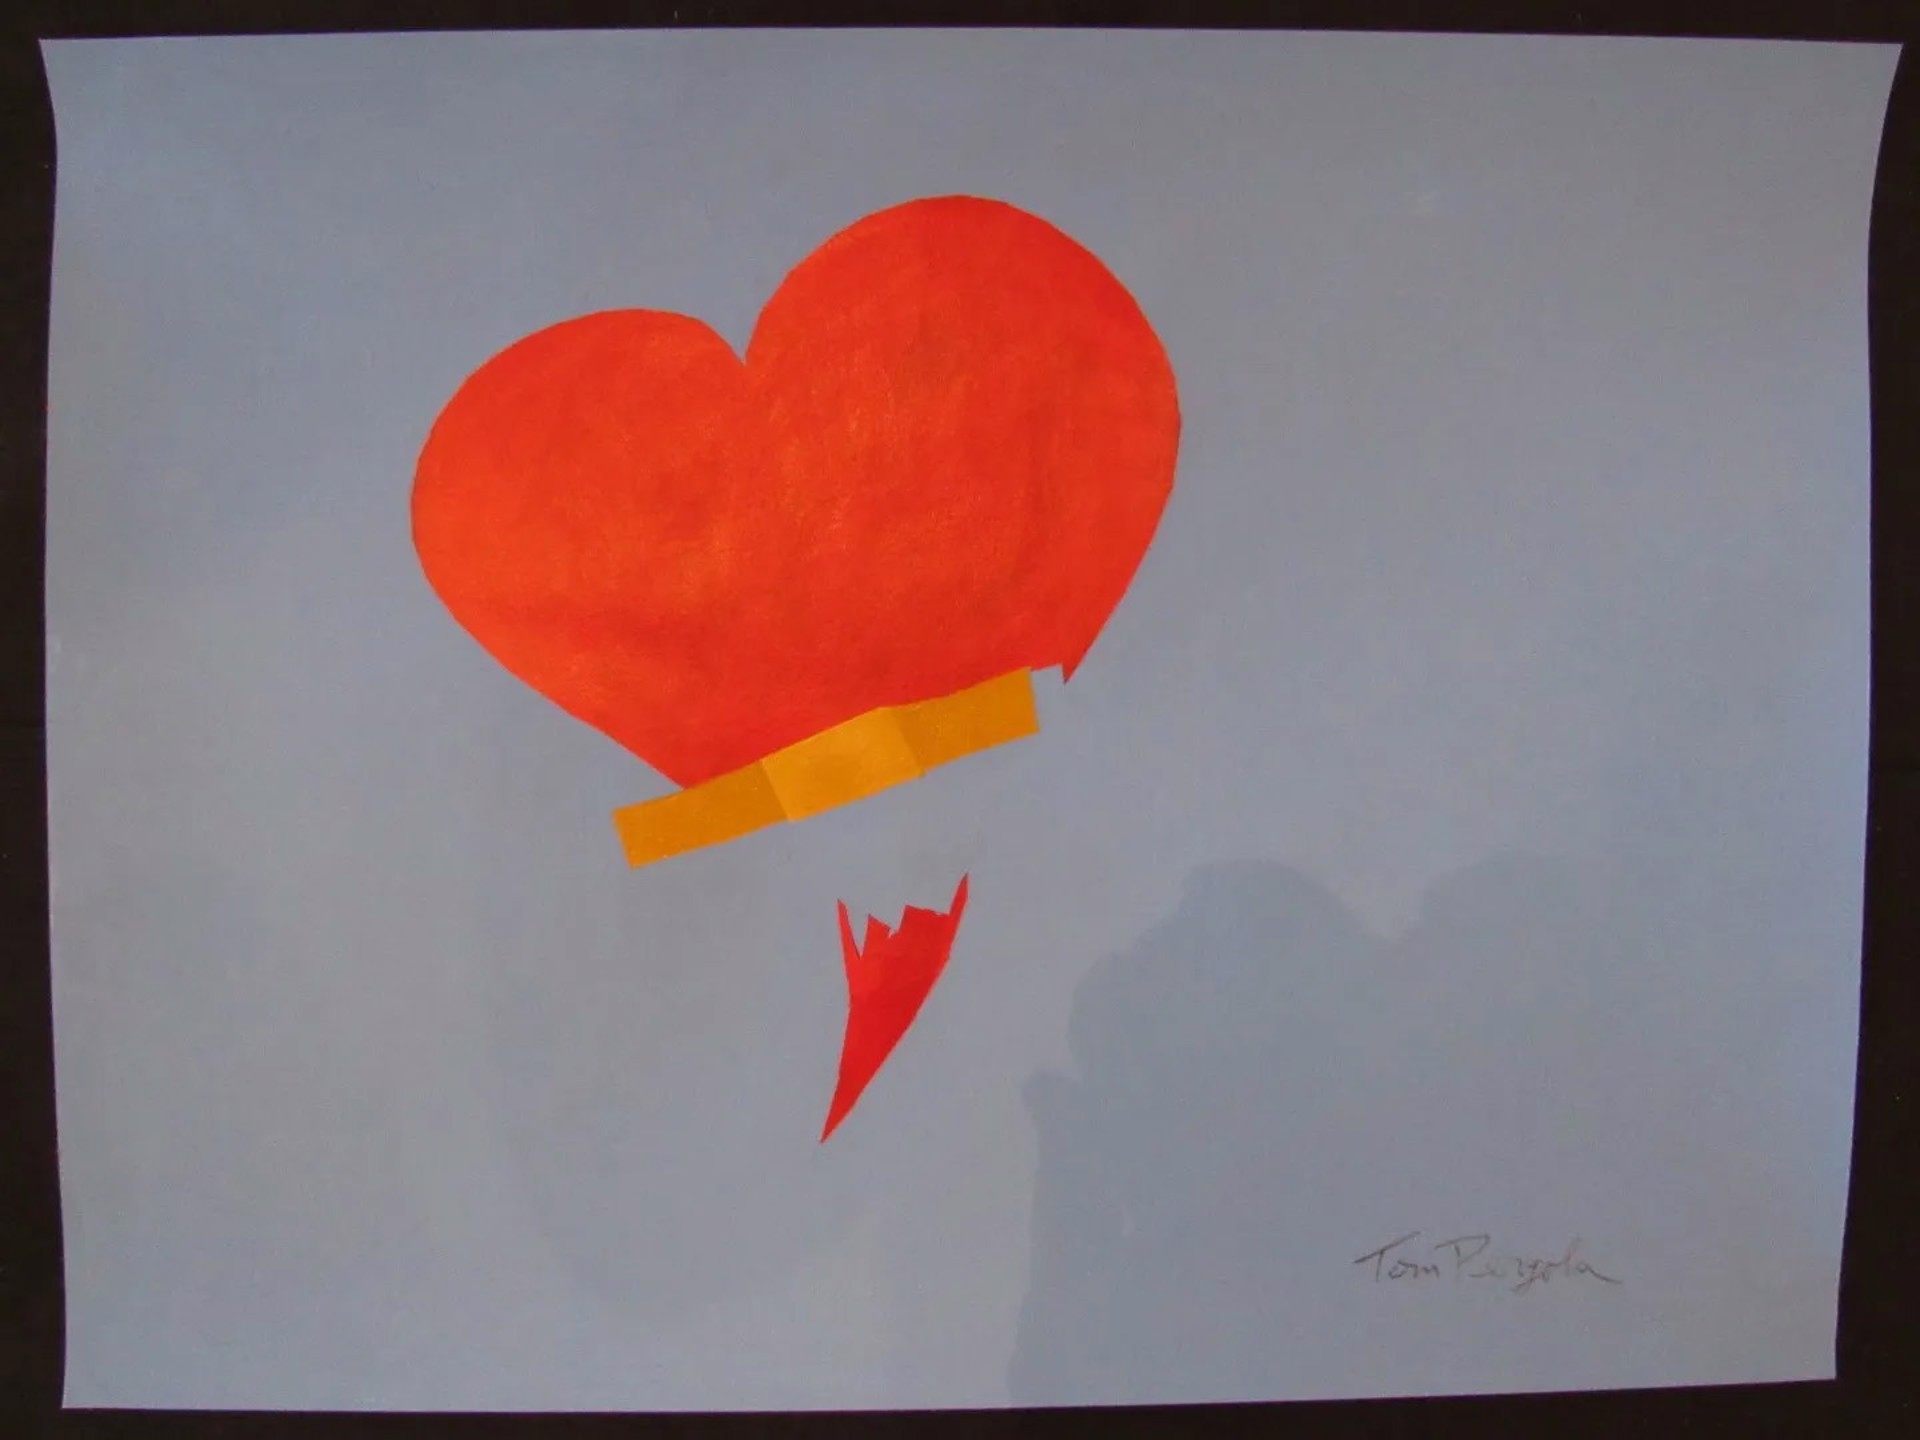 Broken Heart by Tom Pergola